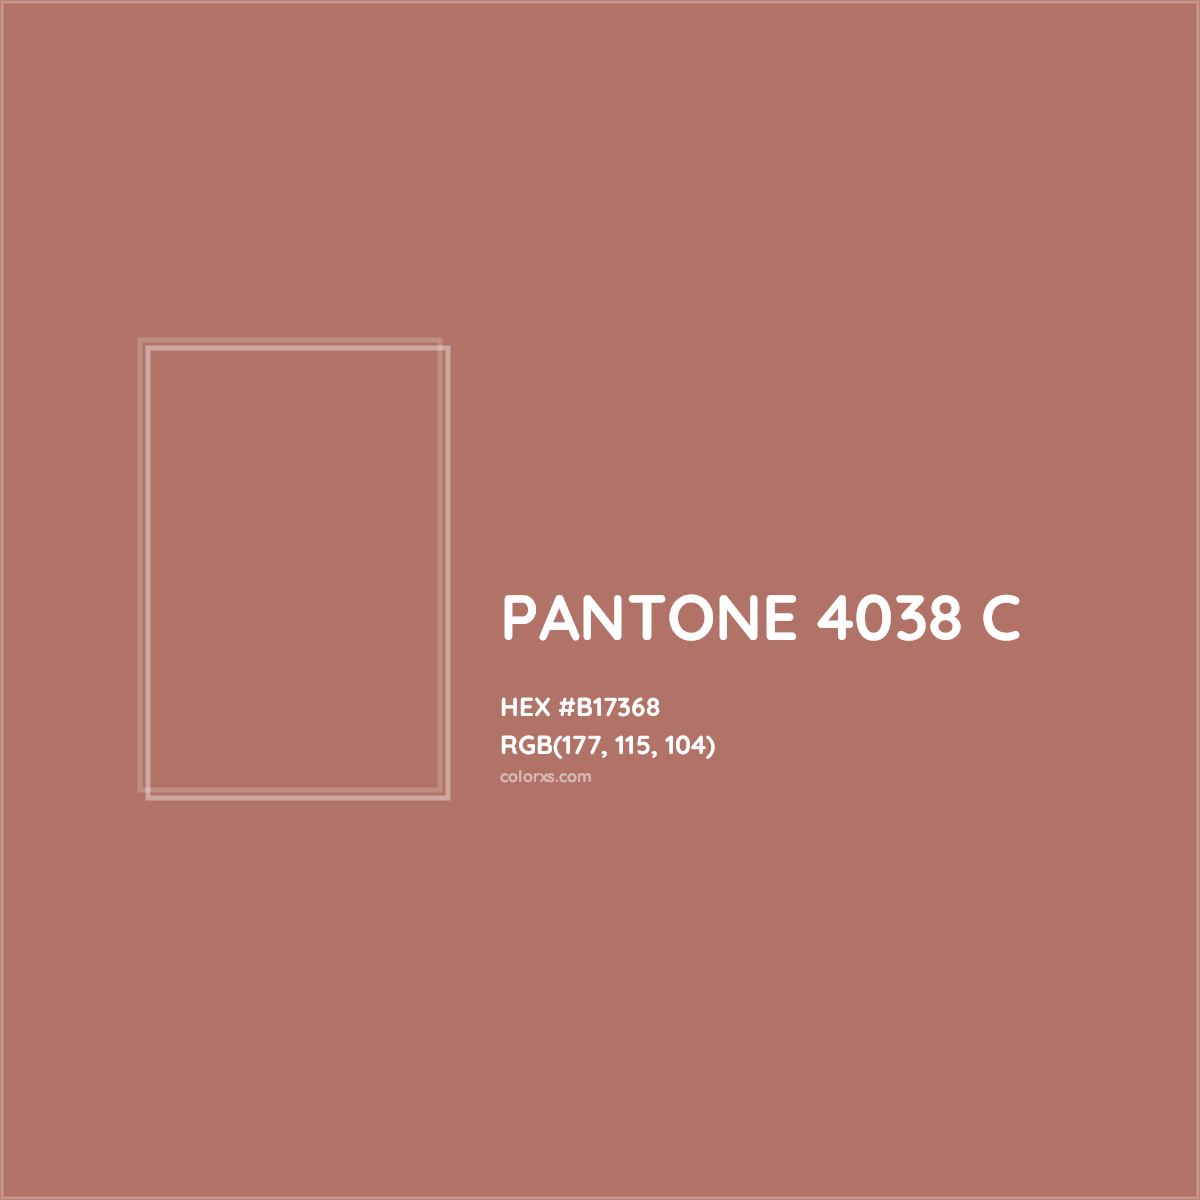 HEX #B17368 PANTONE 4038 C CMS Pantone PMS - Color Code